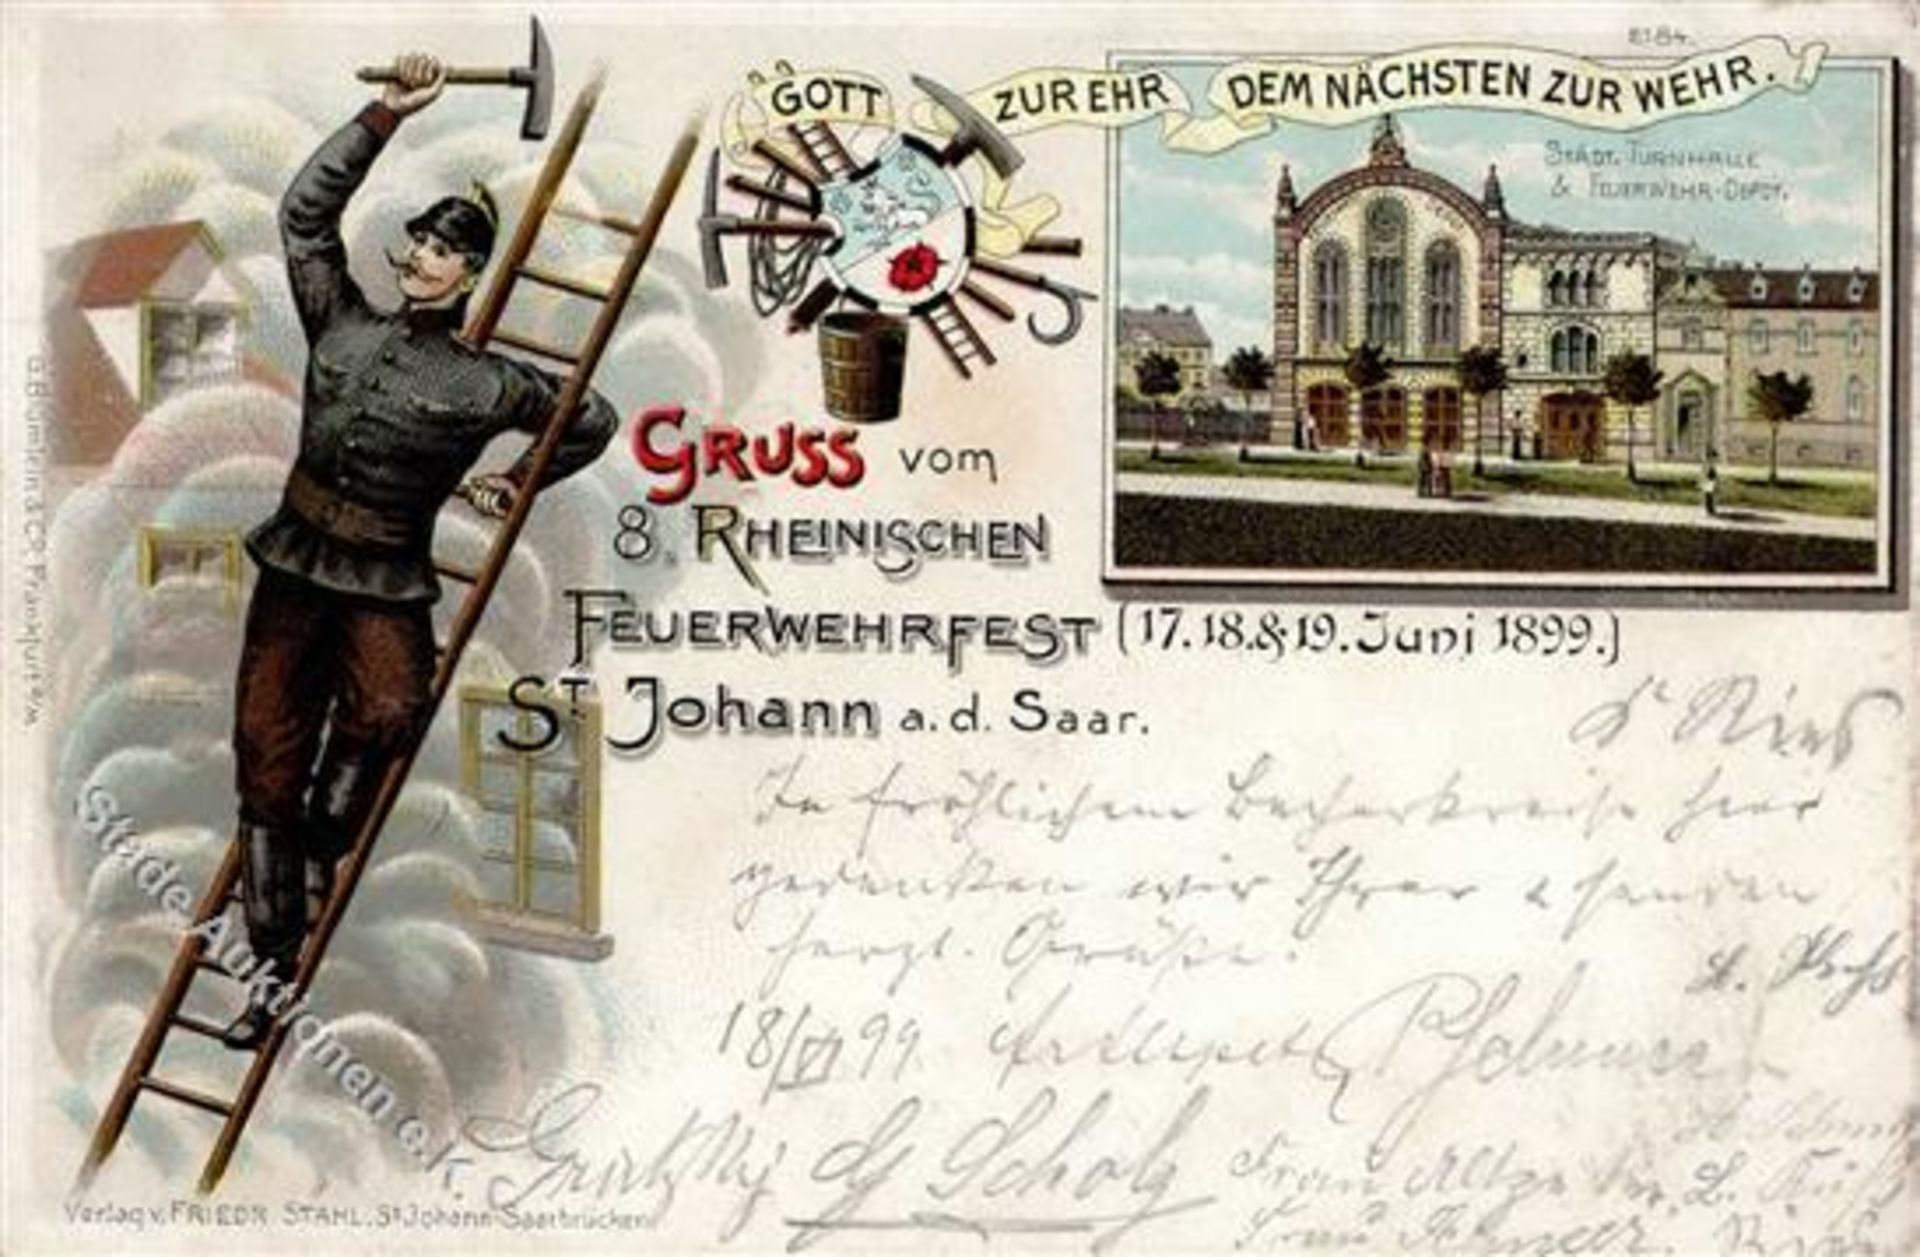 St. Johann (6600) 8. Rheinisches Feuerwehrfest Feuerwehr-Depot Turnhalle Lithographie 1899 I-II (